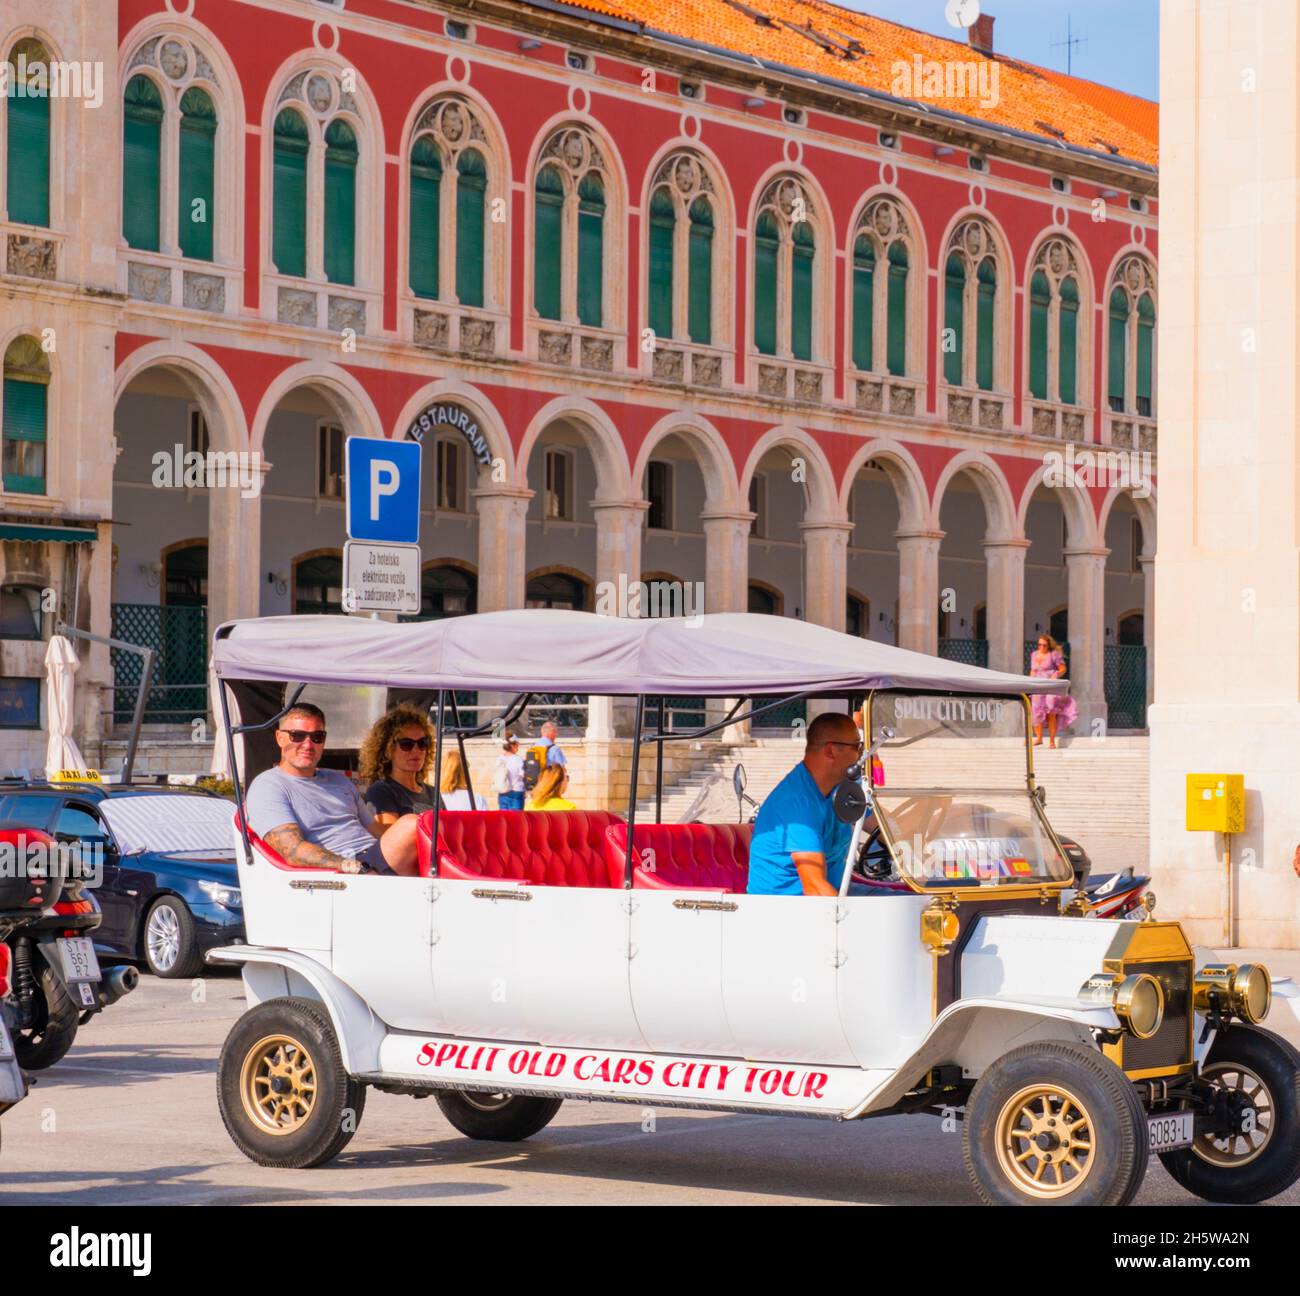 Visite de la ville des voitures anciennes, Trg Republike, Split, Croatie Banque D'Images